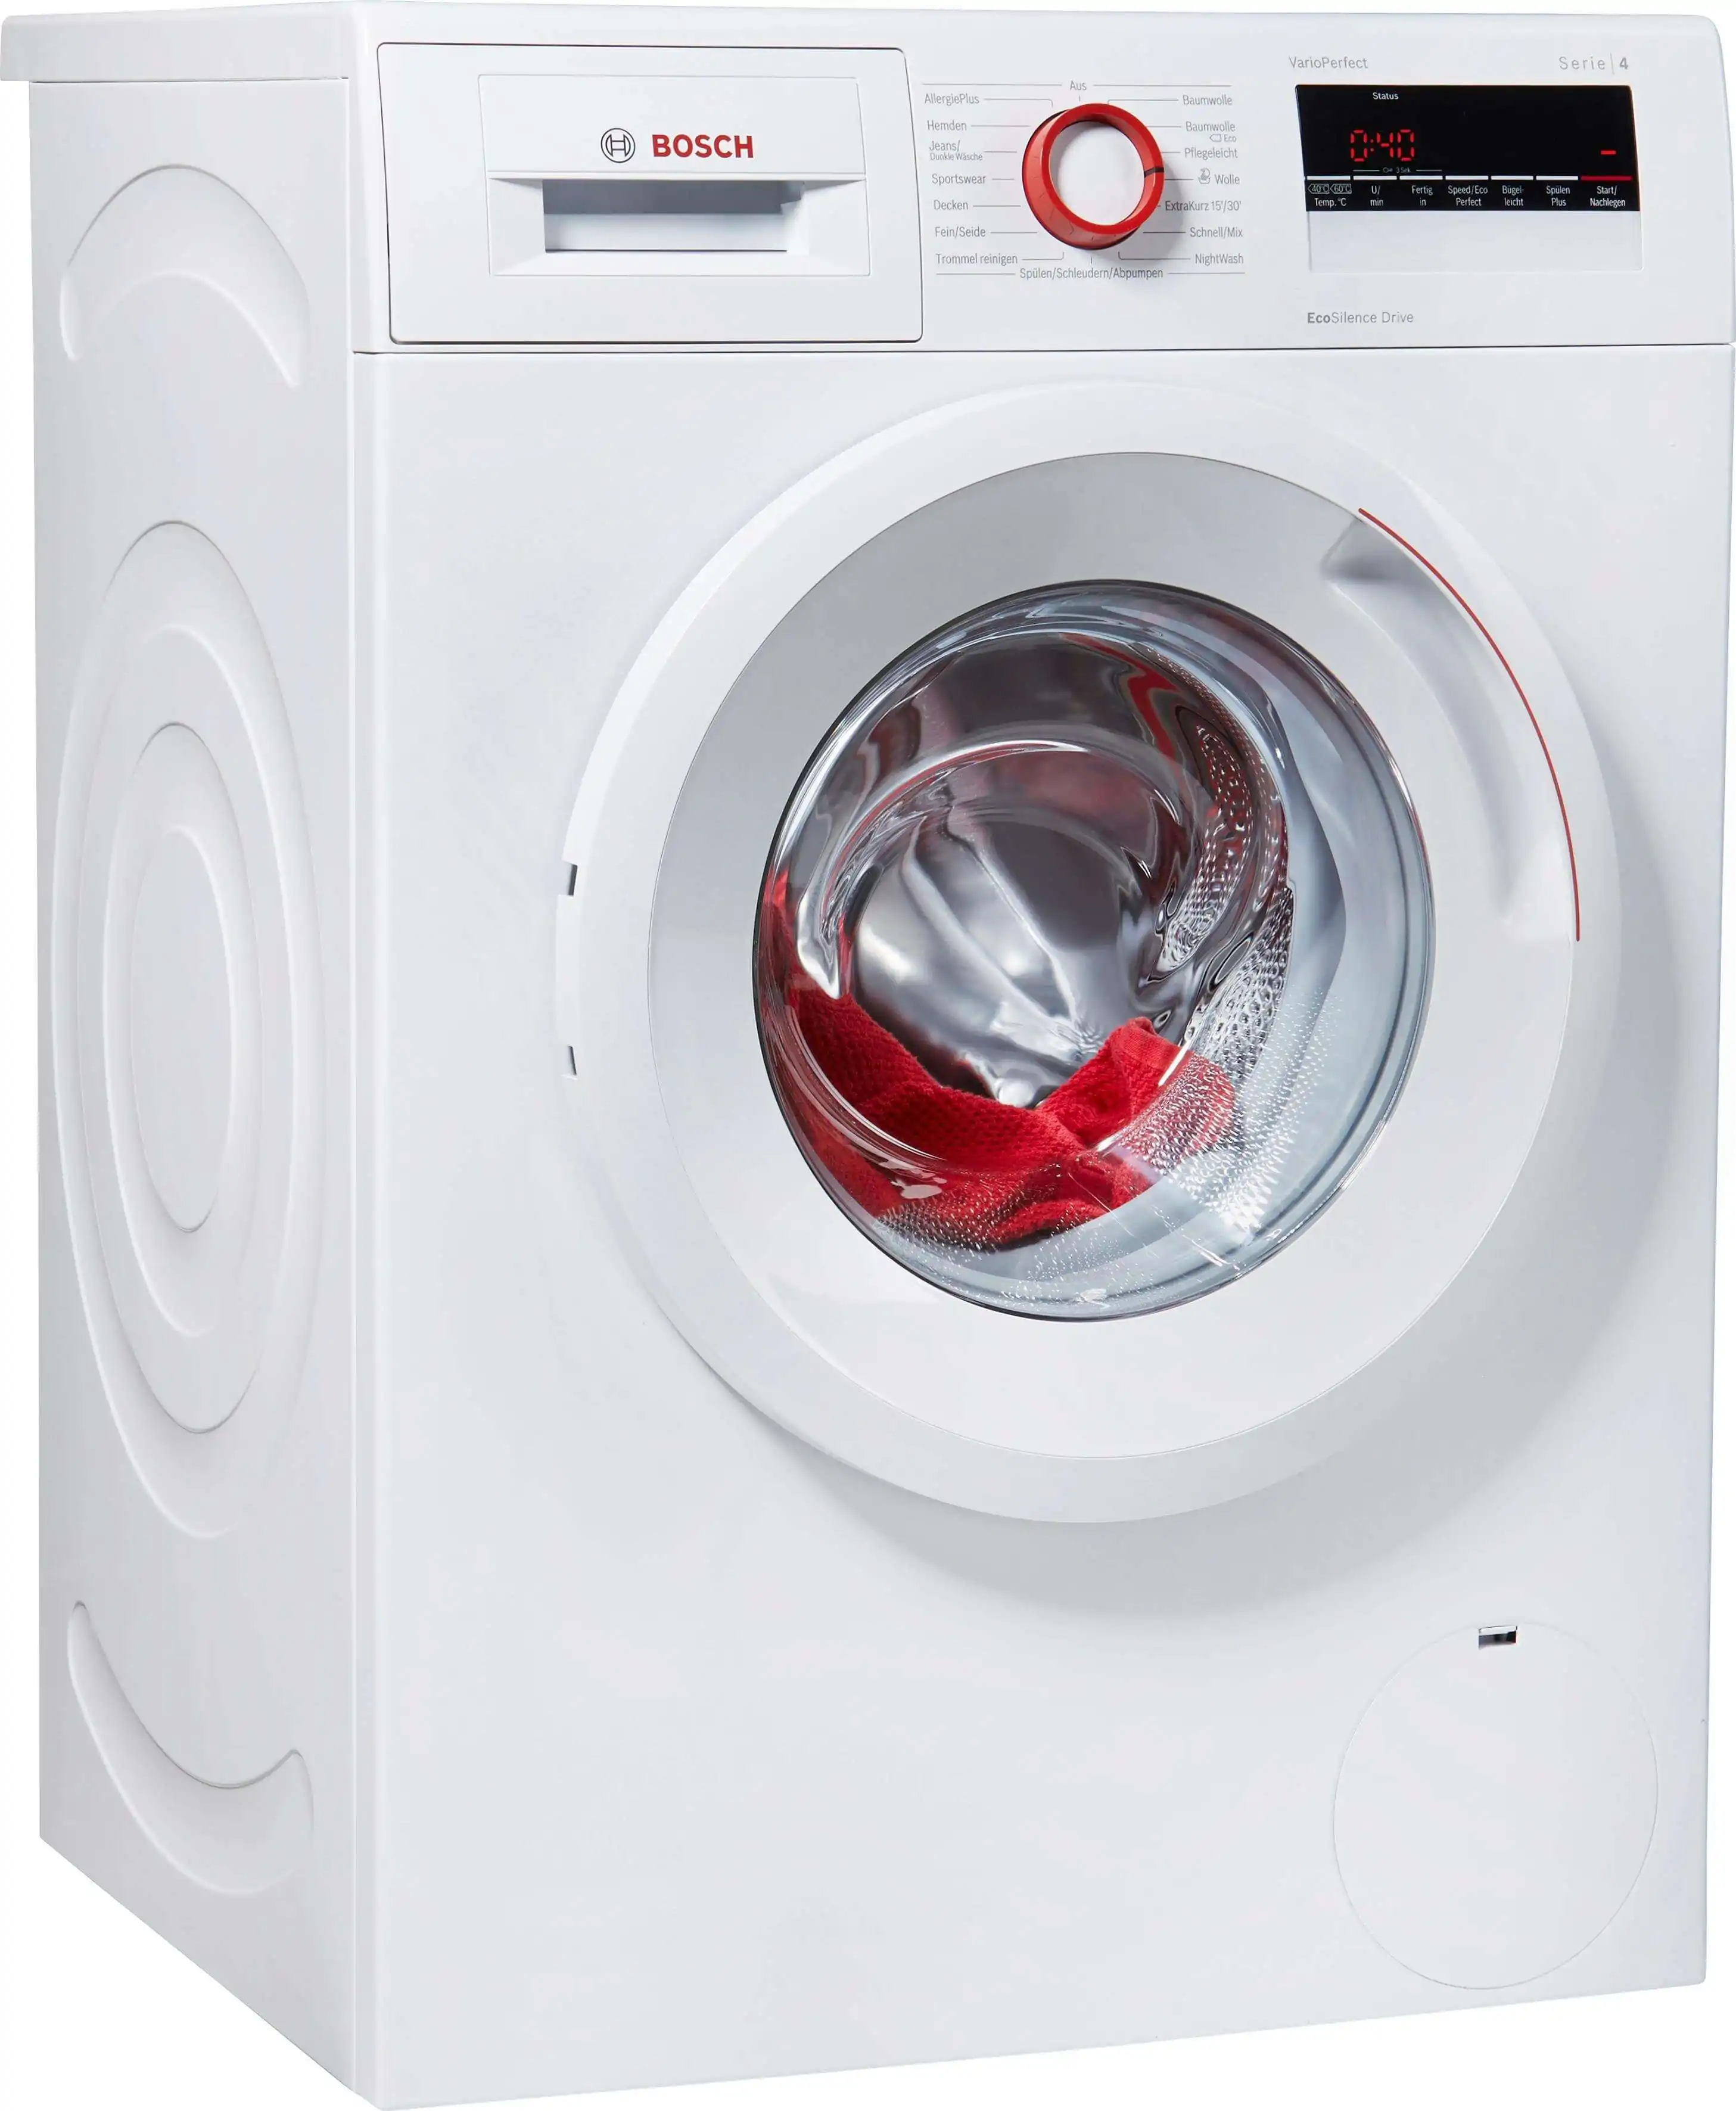 Bosch Wan282v8 Waschmaschine im Test 05/2020